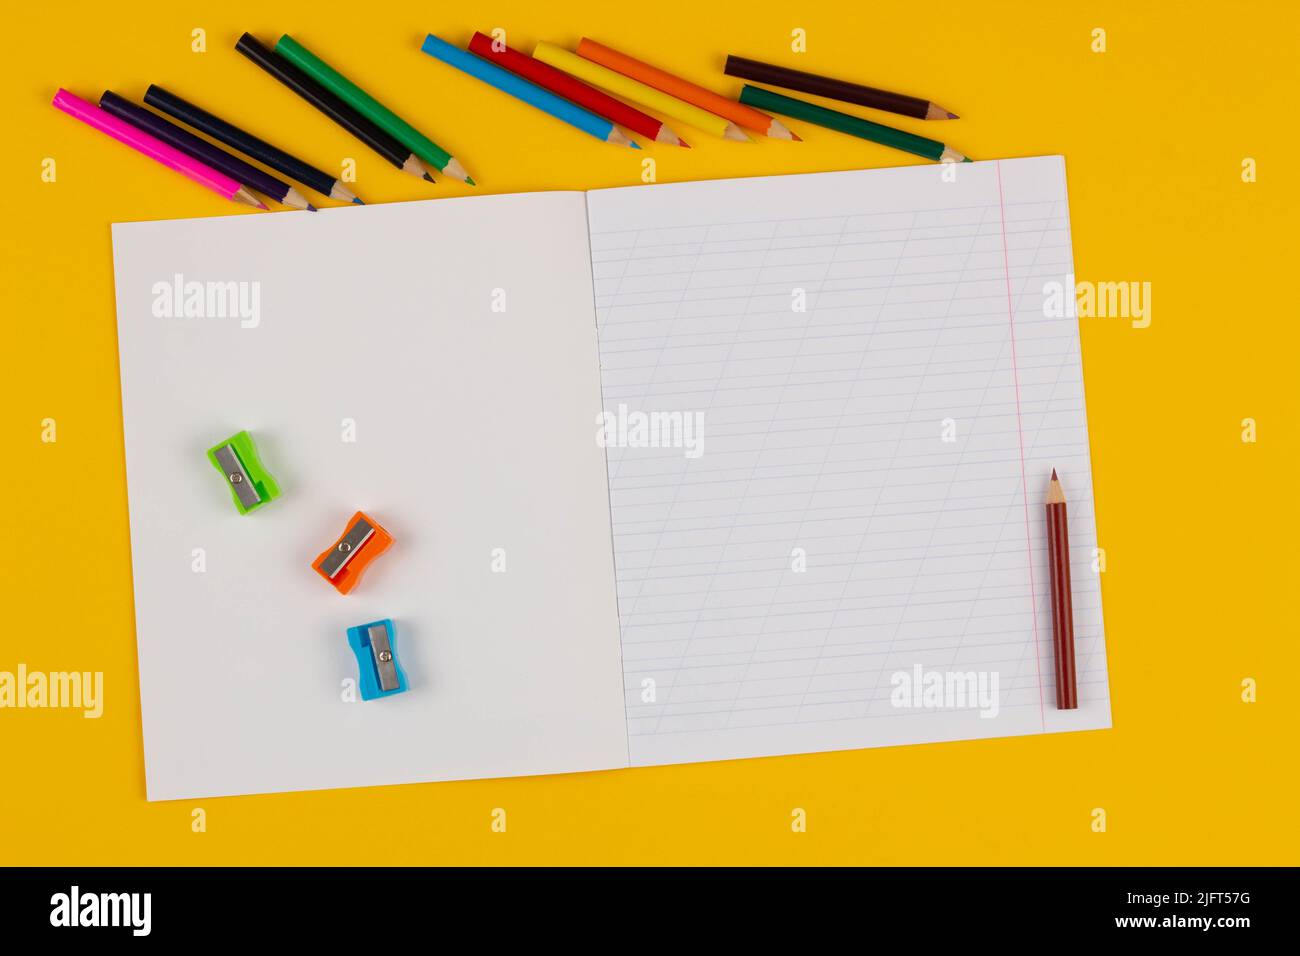 Carnet d'école sur fond jaune avec texte d'espace de copie, crayons colorés, taille-crayons. Retour à l'école. Feuille de papier vierge avec oblique Banque D'Images